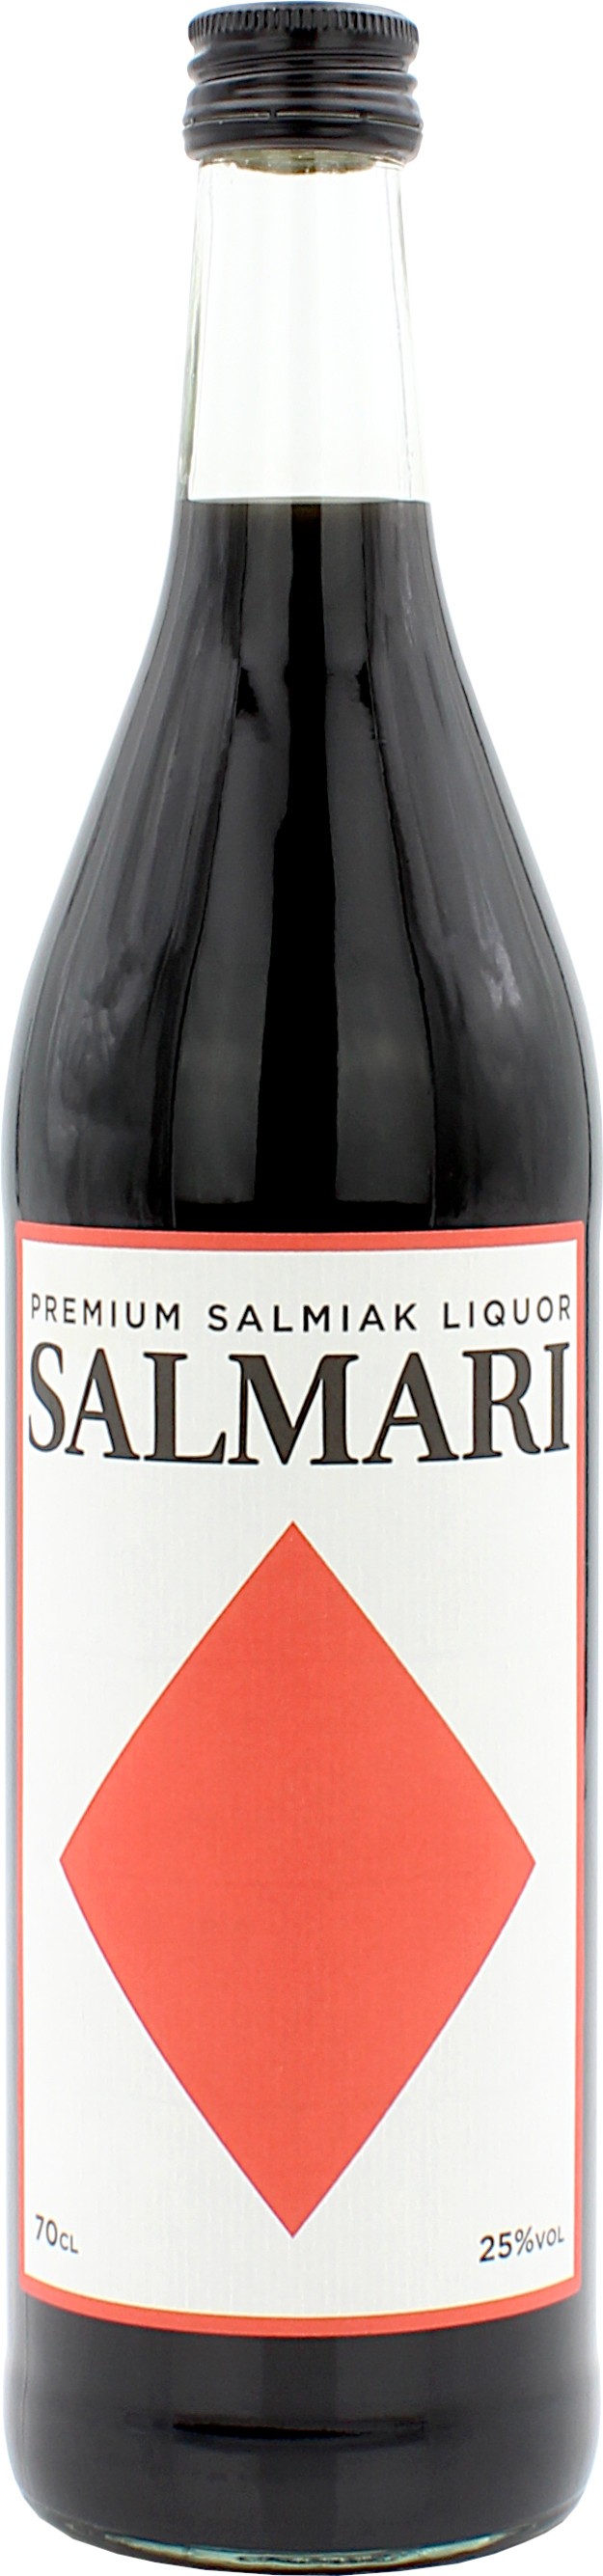 Salmari Salmiak Likör 0,7